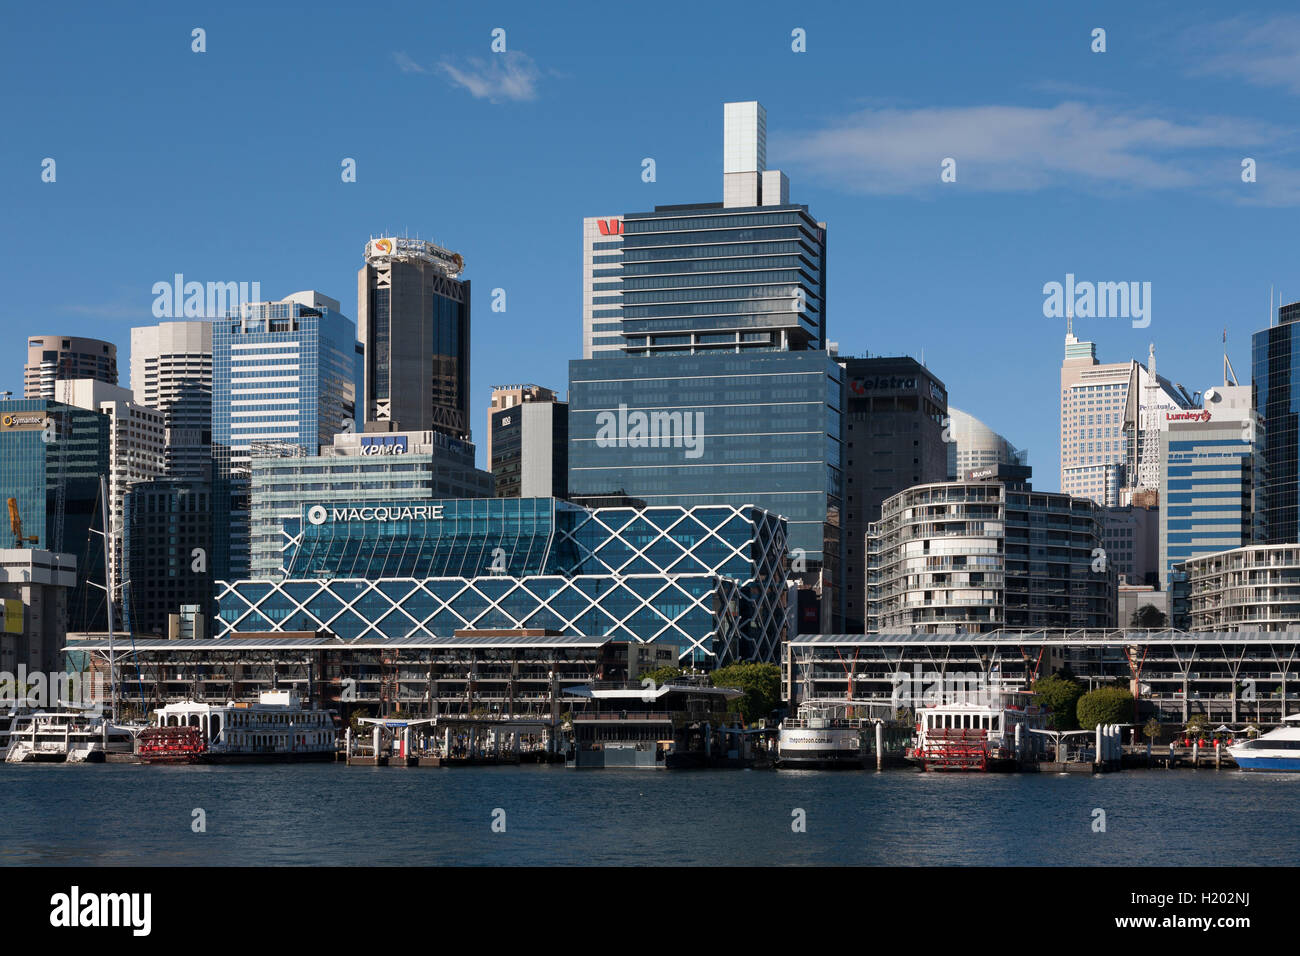 Kings Wharf en un hermoso día soleado con el Macquarie Bank sede-Darling Harbour Sydney Australia Foto de stock